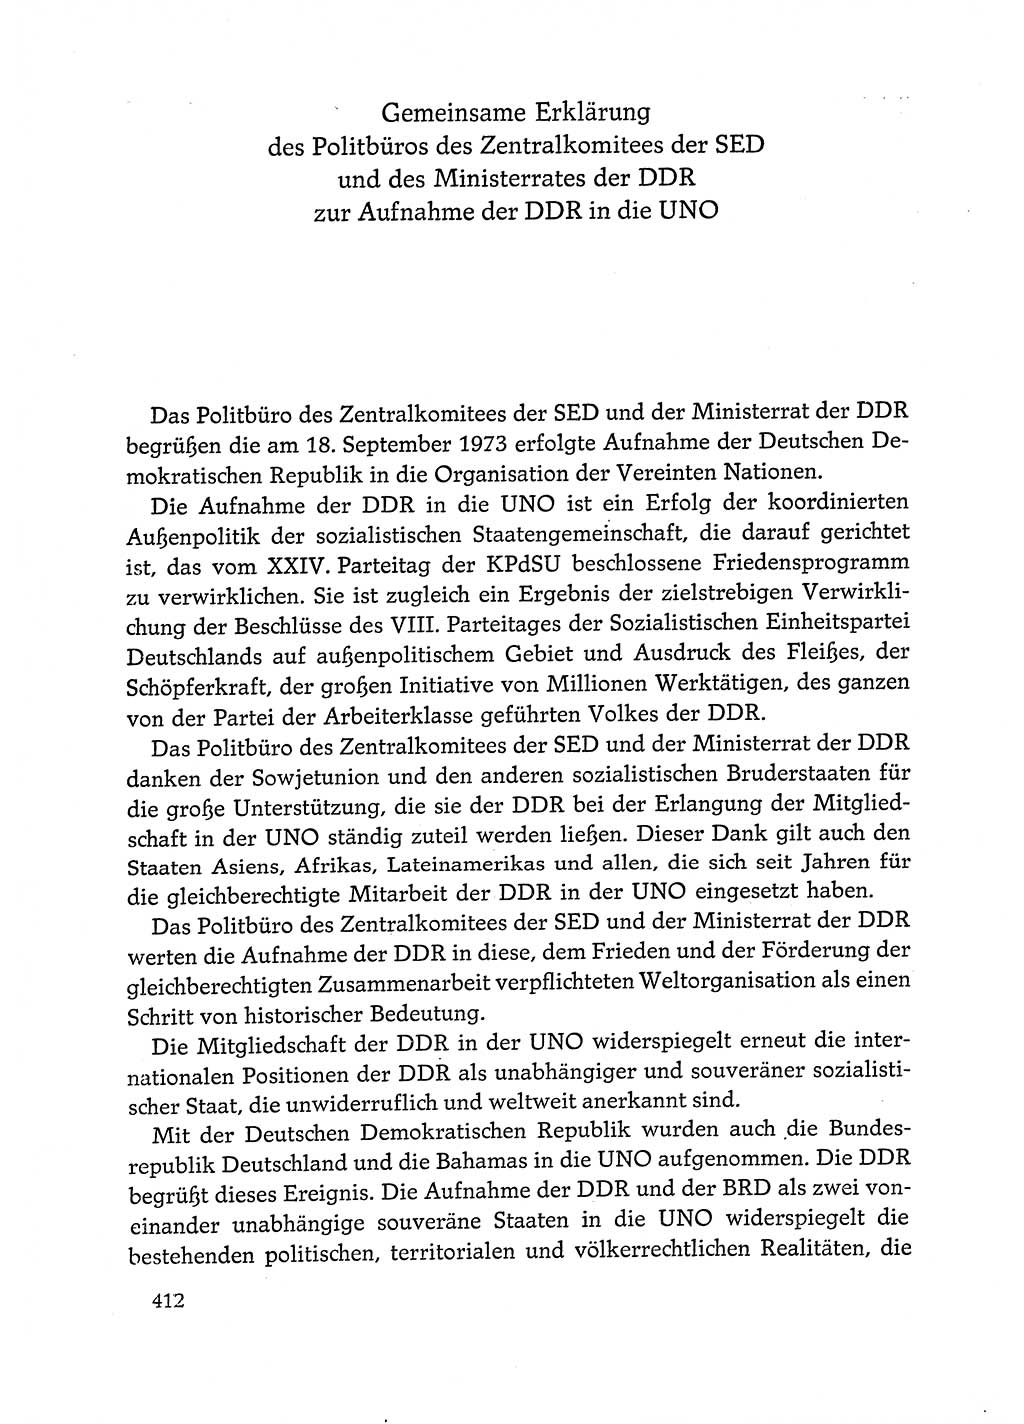 Dokumente der Sozialistischen Einheitspartei Deutschlands (SED) [Deutsche Demokratische Republik (DDR)] 1972-1973, Seite 412 (Dok. SED DDR 1972-1973, S. 412)